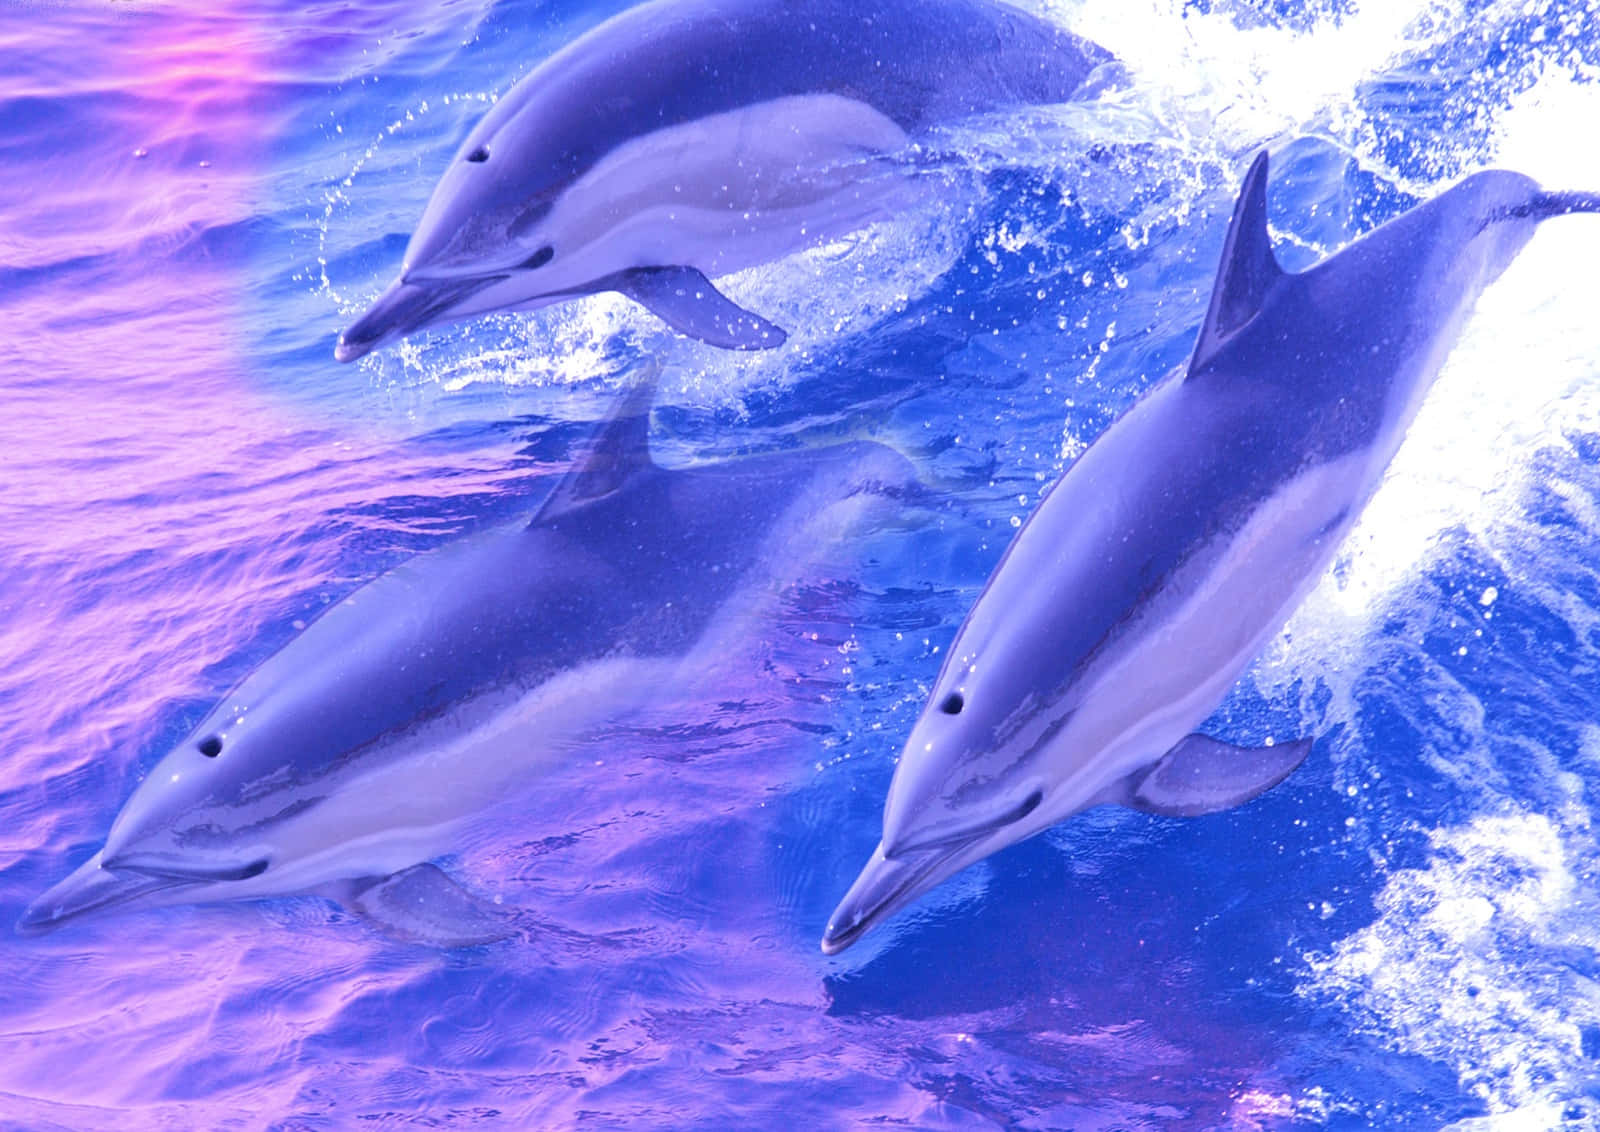 Labelleza De La Naturaleza: Delfines Jugando En El Mar